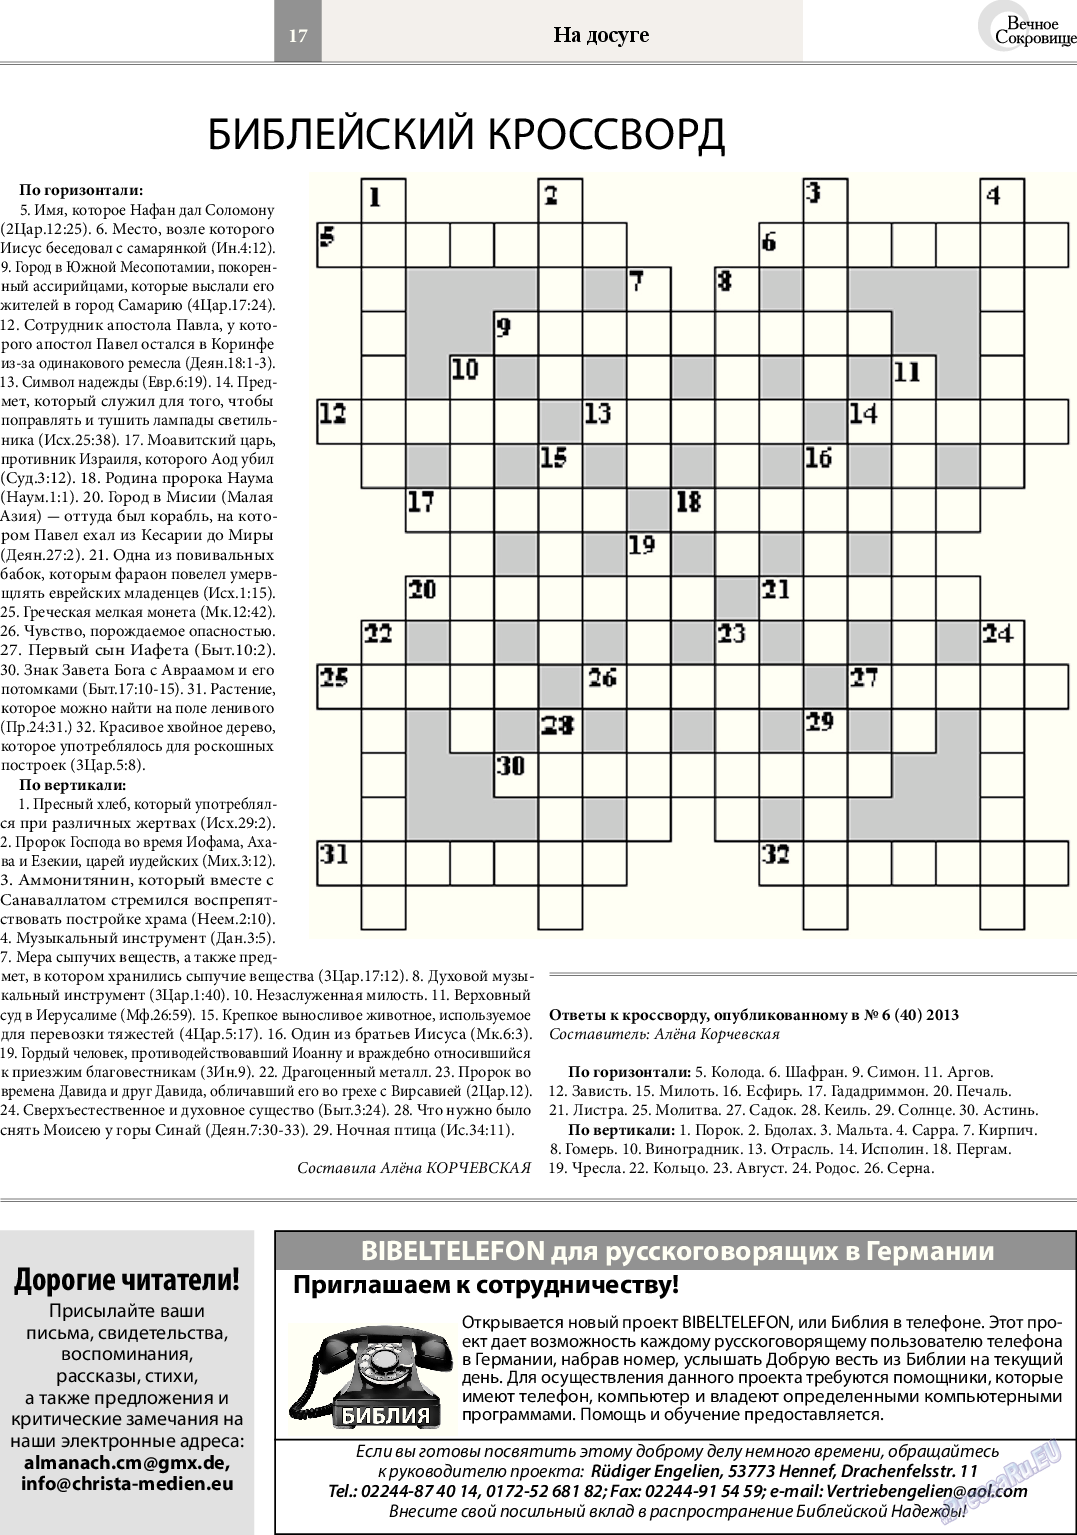 Вечное сокровище (газета). 2014 год, номер 2, стр. 17